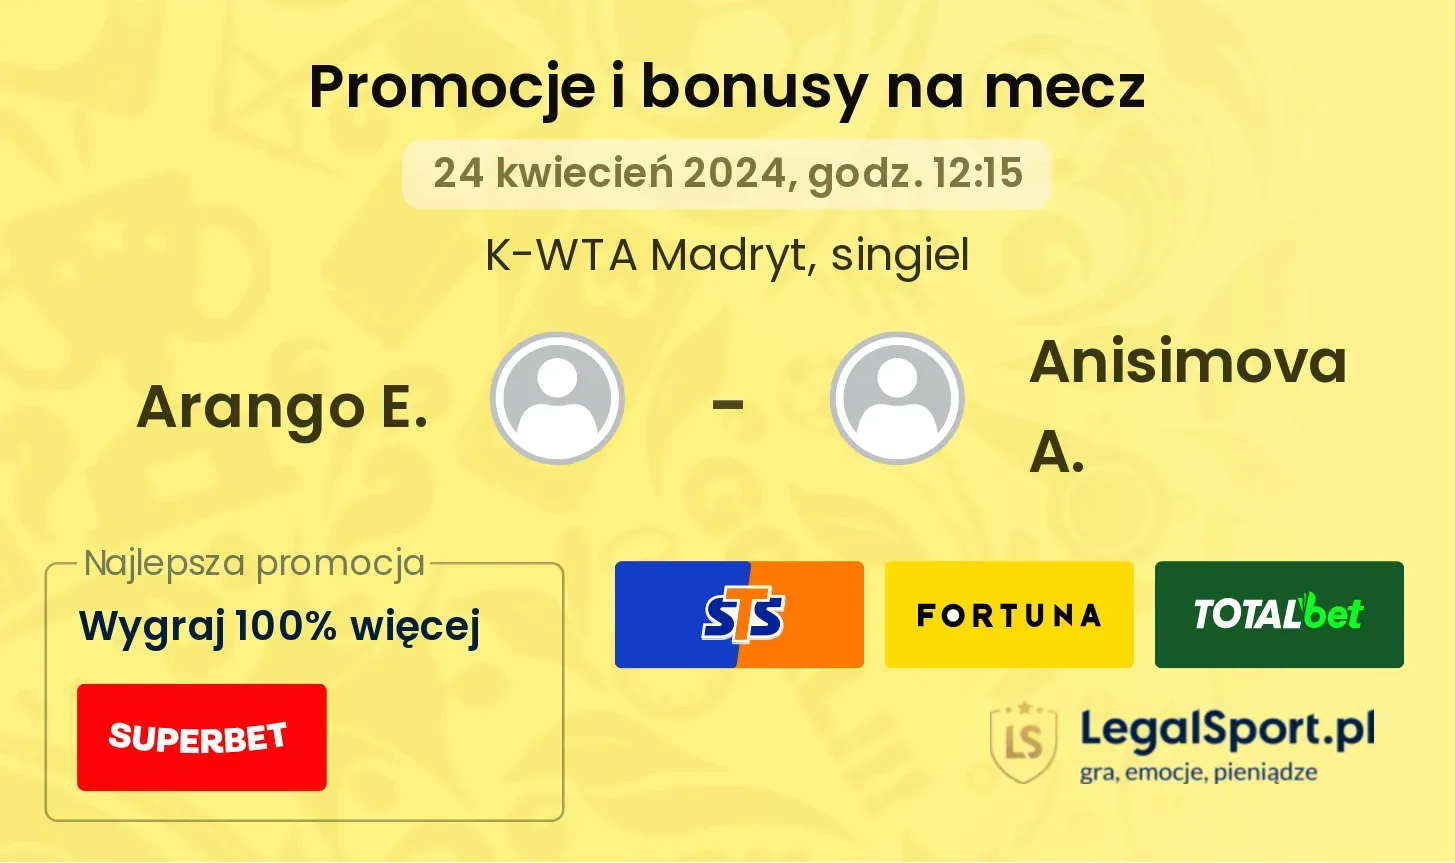 Arango E. - Anisimova A. promocje bonusy na mecz